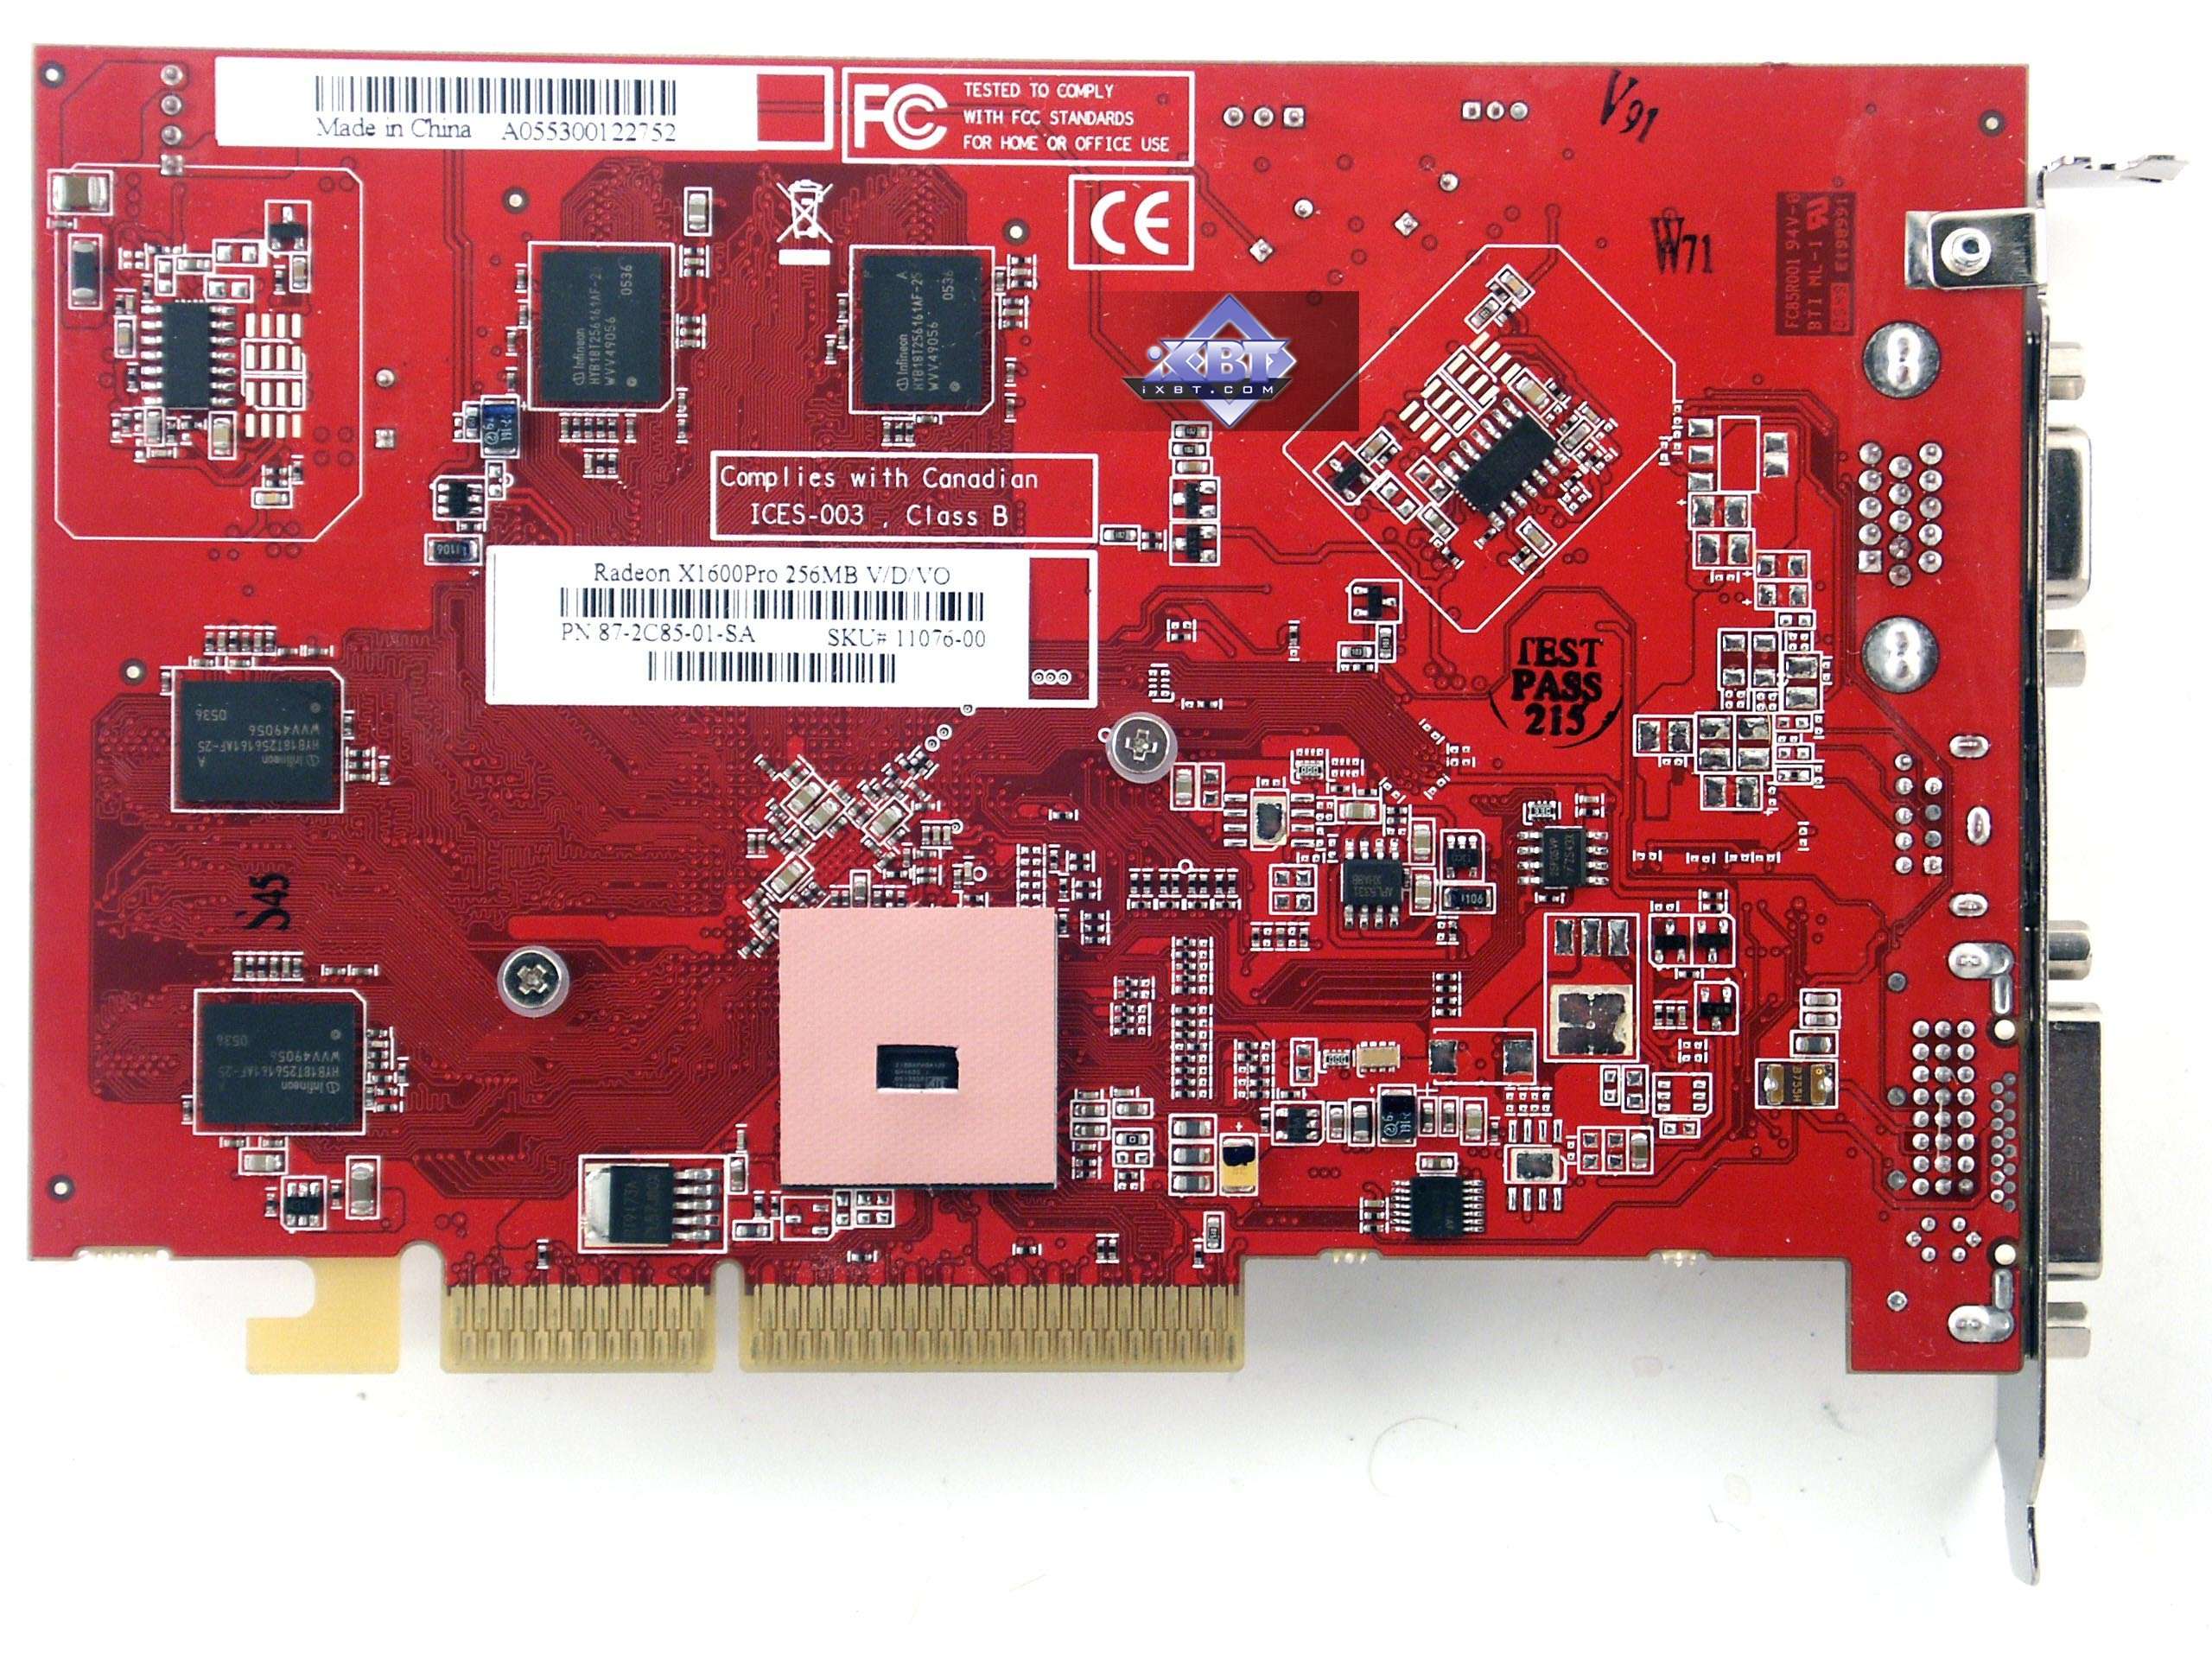 Ati radeon x1600. Видеокарта: ATI Radeon x1600 Pro. AMD Radeon x1600. AMD x1300 видеокарта. AMD Radeon ATI 1600x.